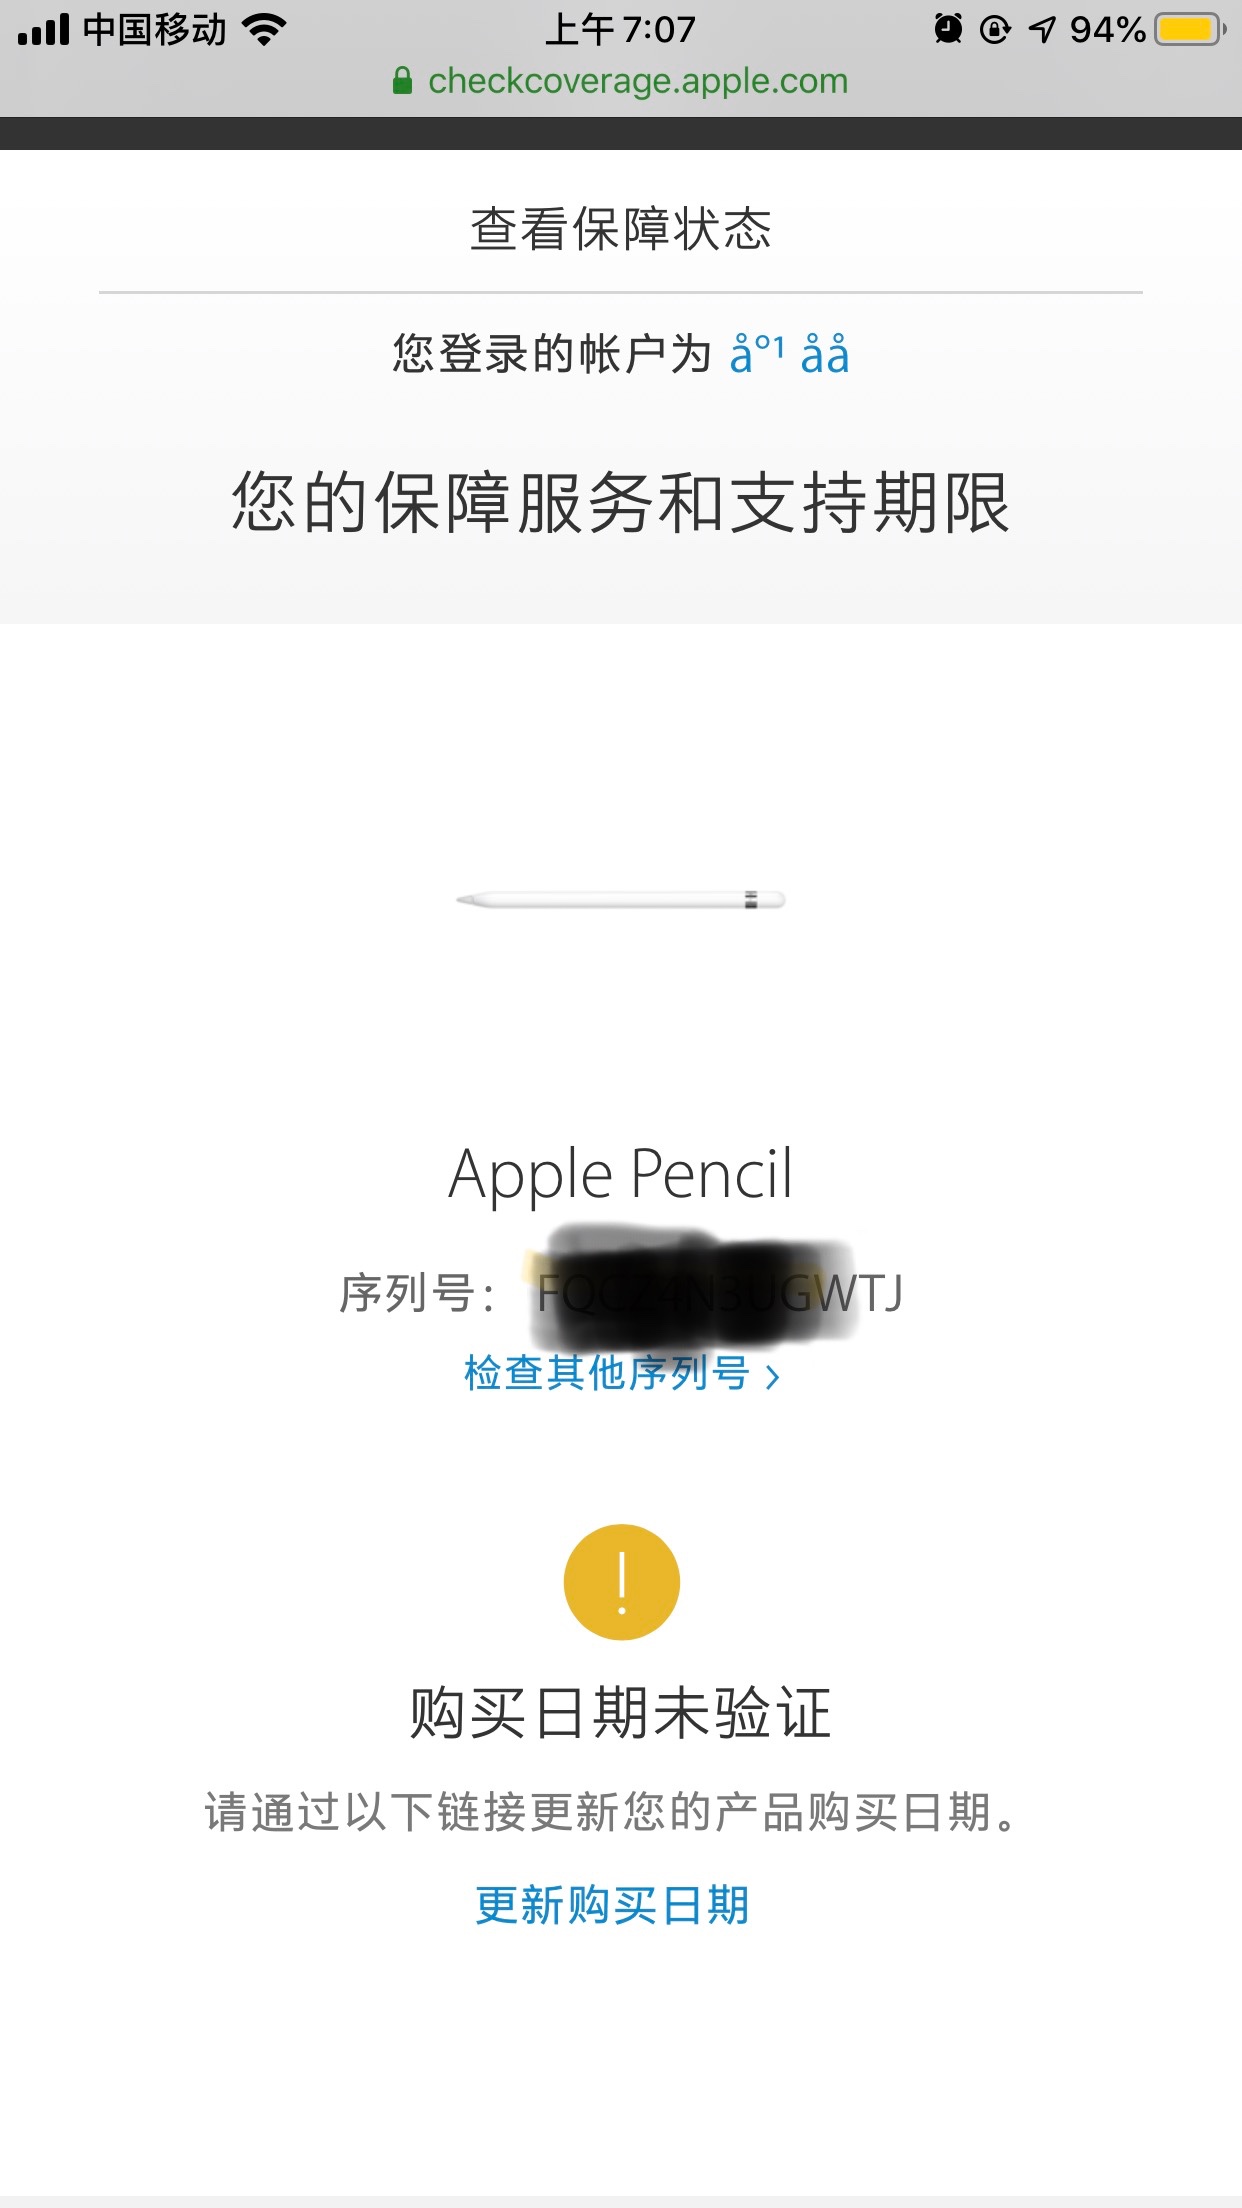 apple pencil 1代查询序列号显示无… - Apple 社区